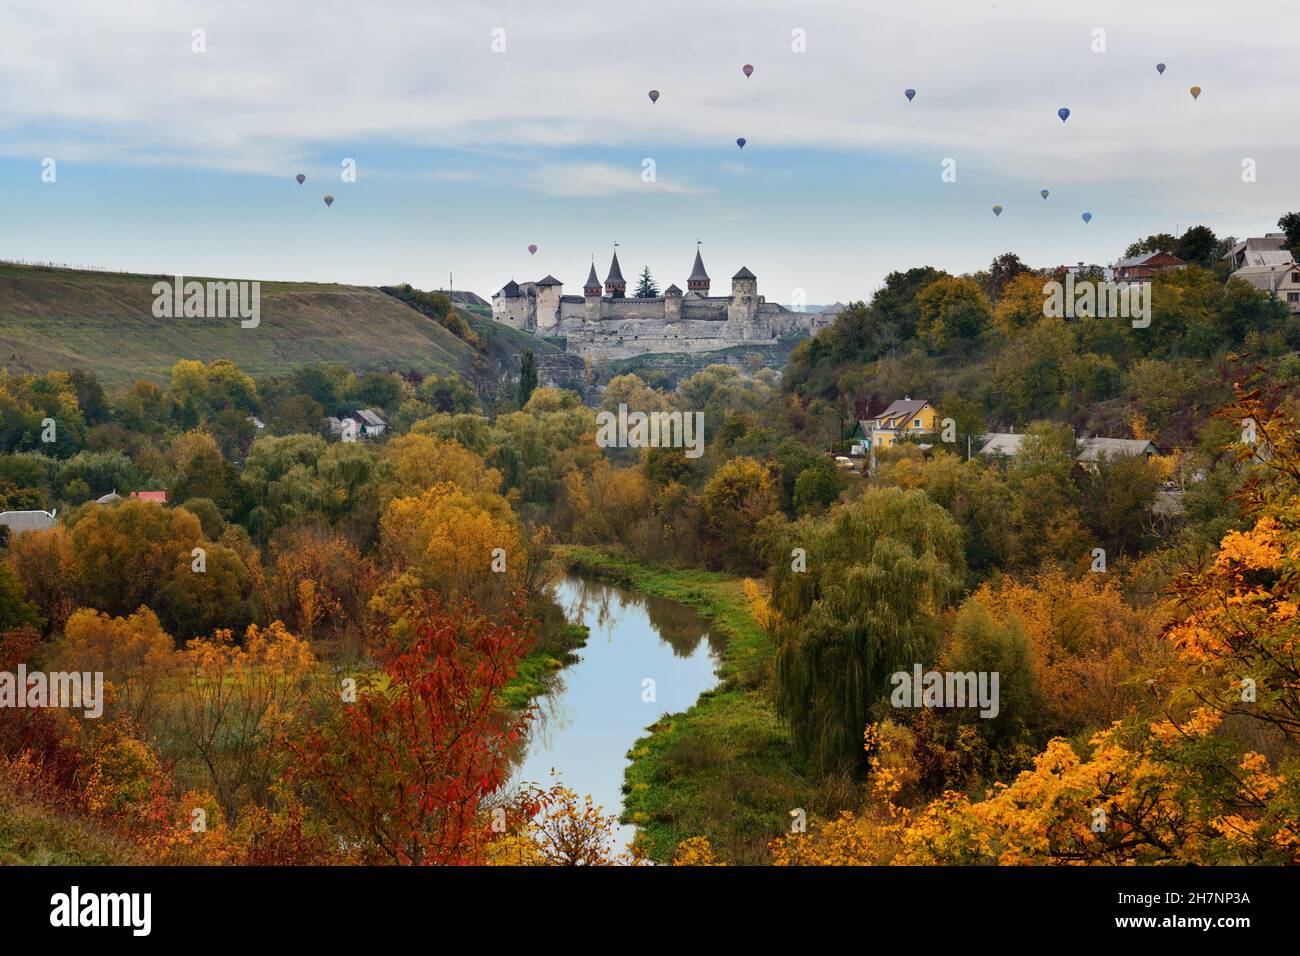 Beau paysage avec des ballons sur l'ancienne forteresse à Kamyanets-Podilsky, Ukraine Banque D'Images